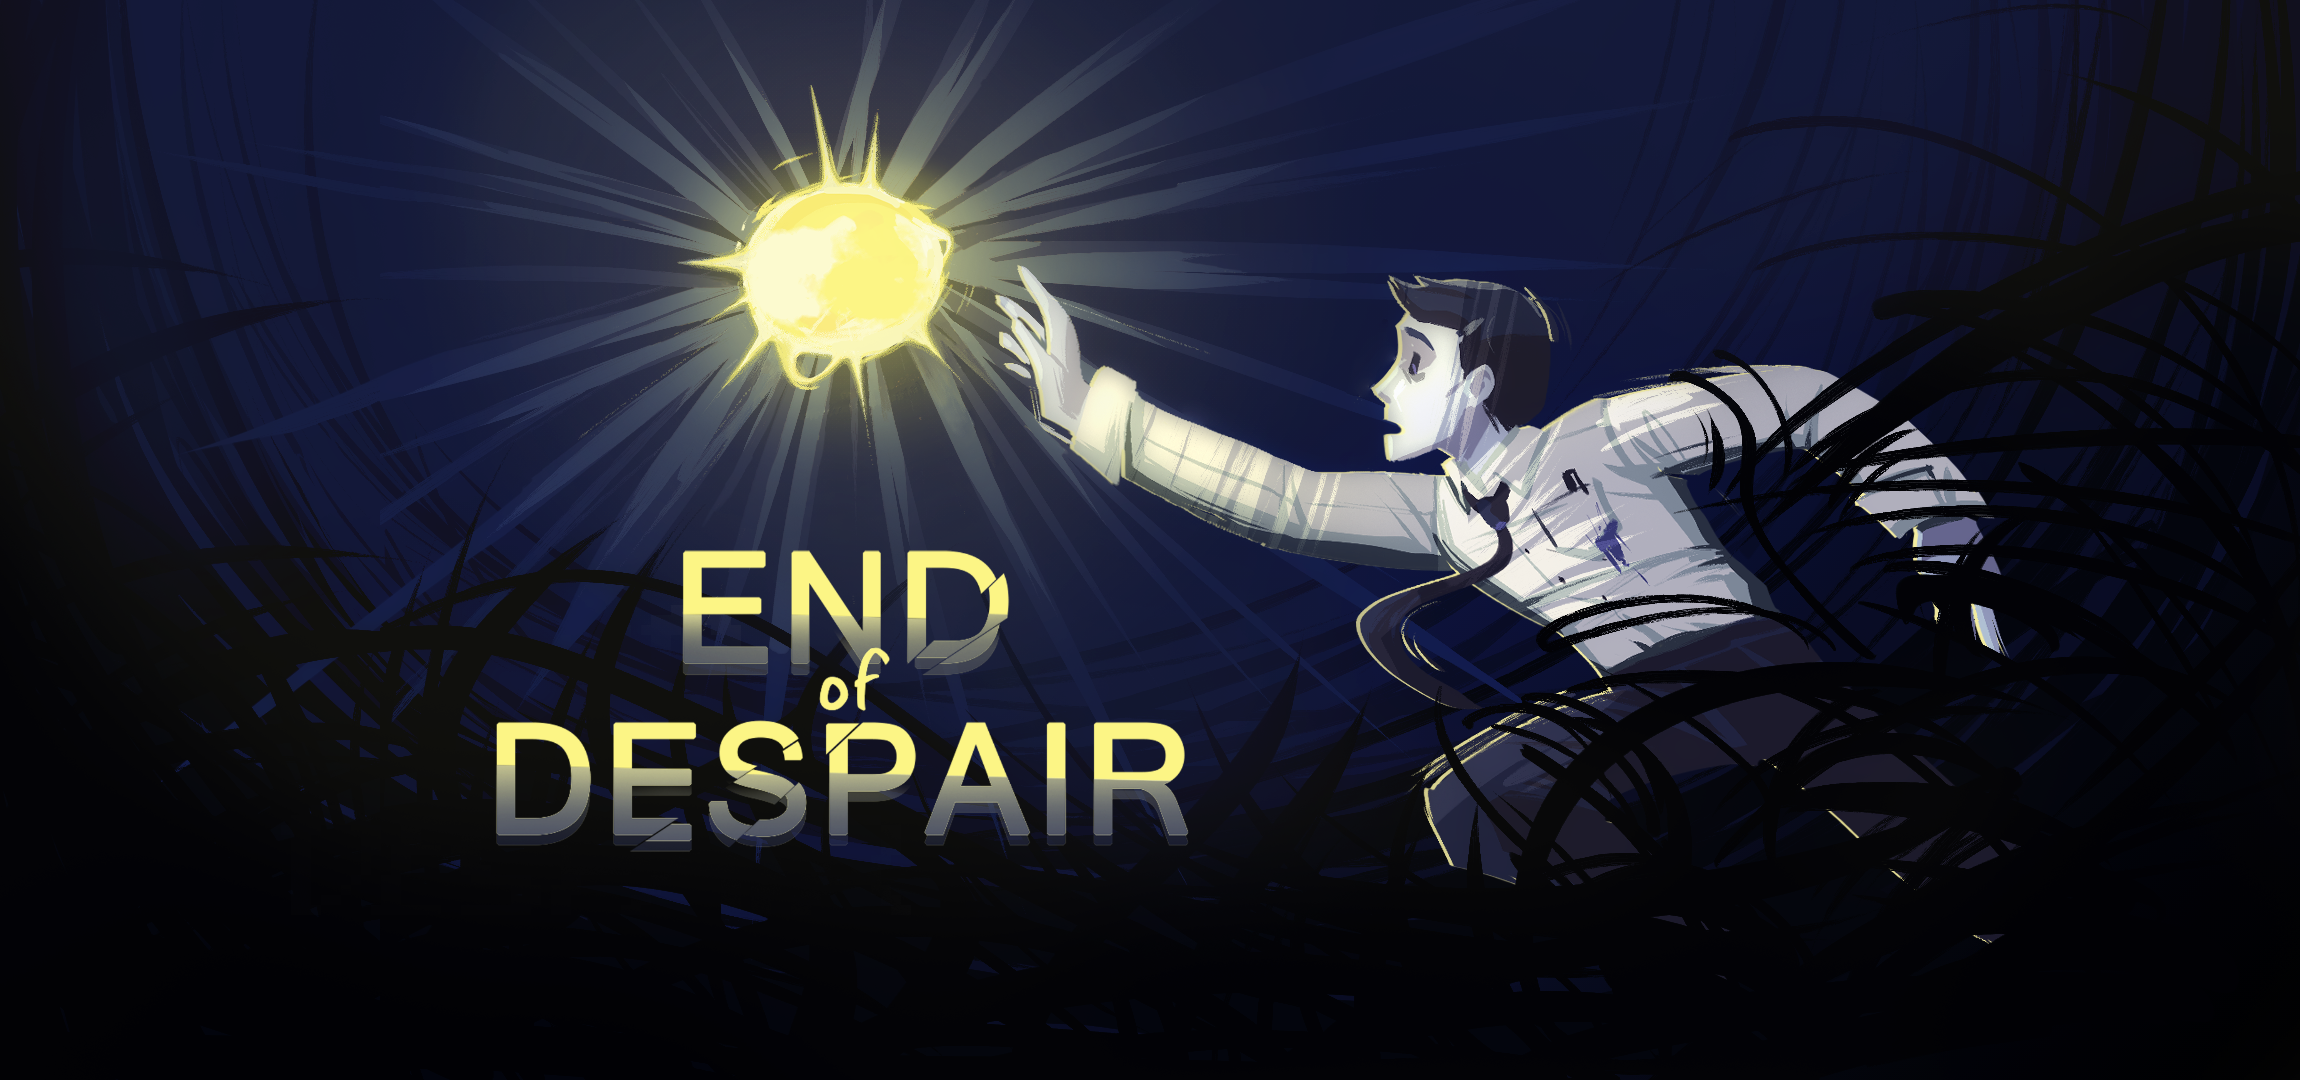 End of Despair